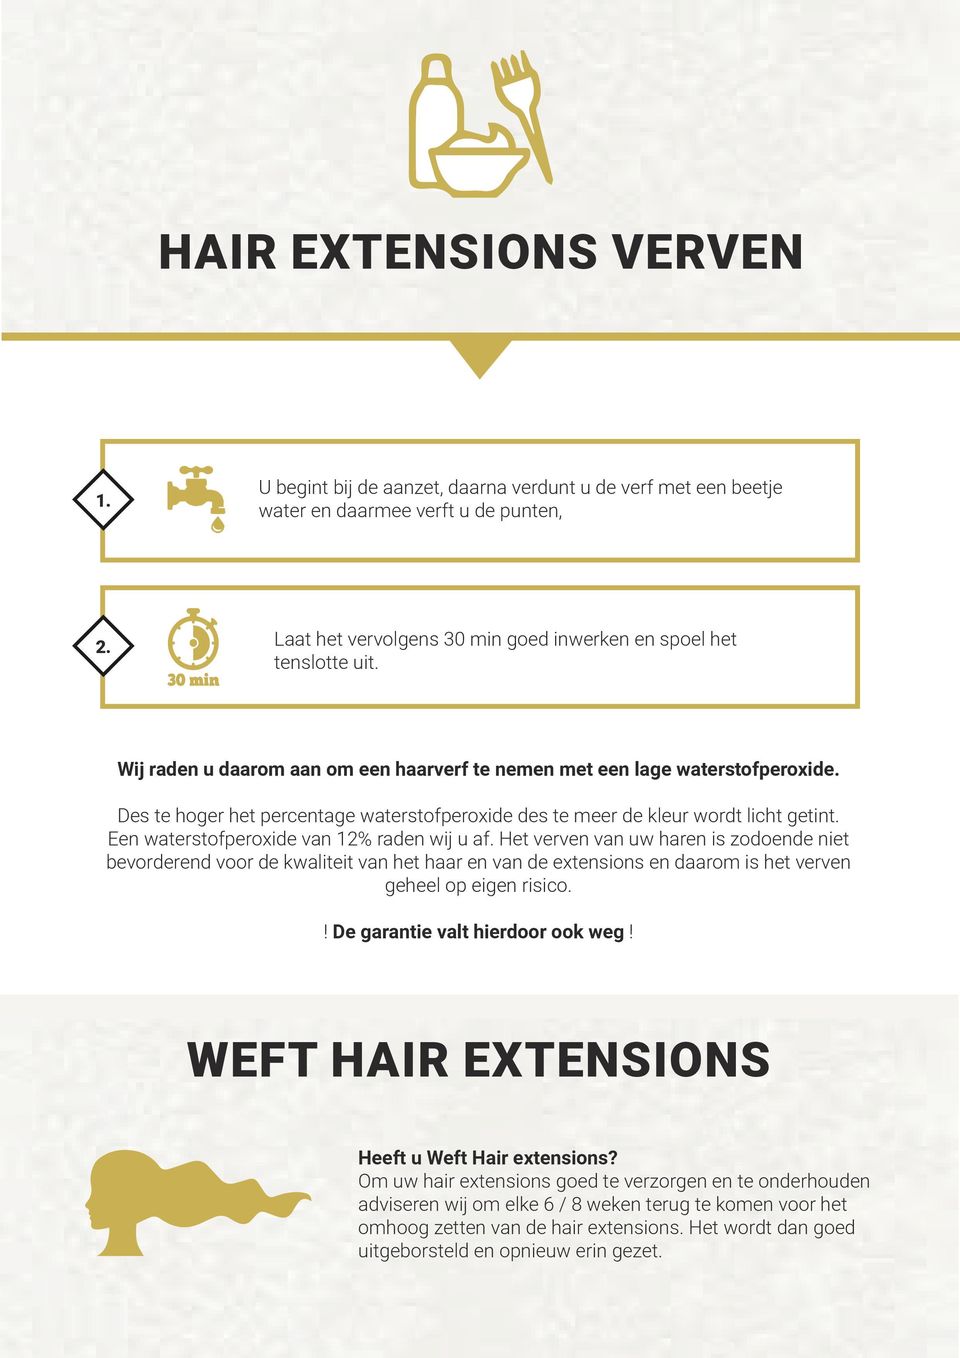 Een waterstofperoxide van 12% raden wij u af. Het verven van uw haren is zodoende niet bevorderend voor de kwaliteit van het haar en van de extensions en daarom is het verven geheel op eigen risico.